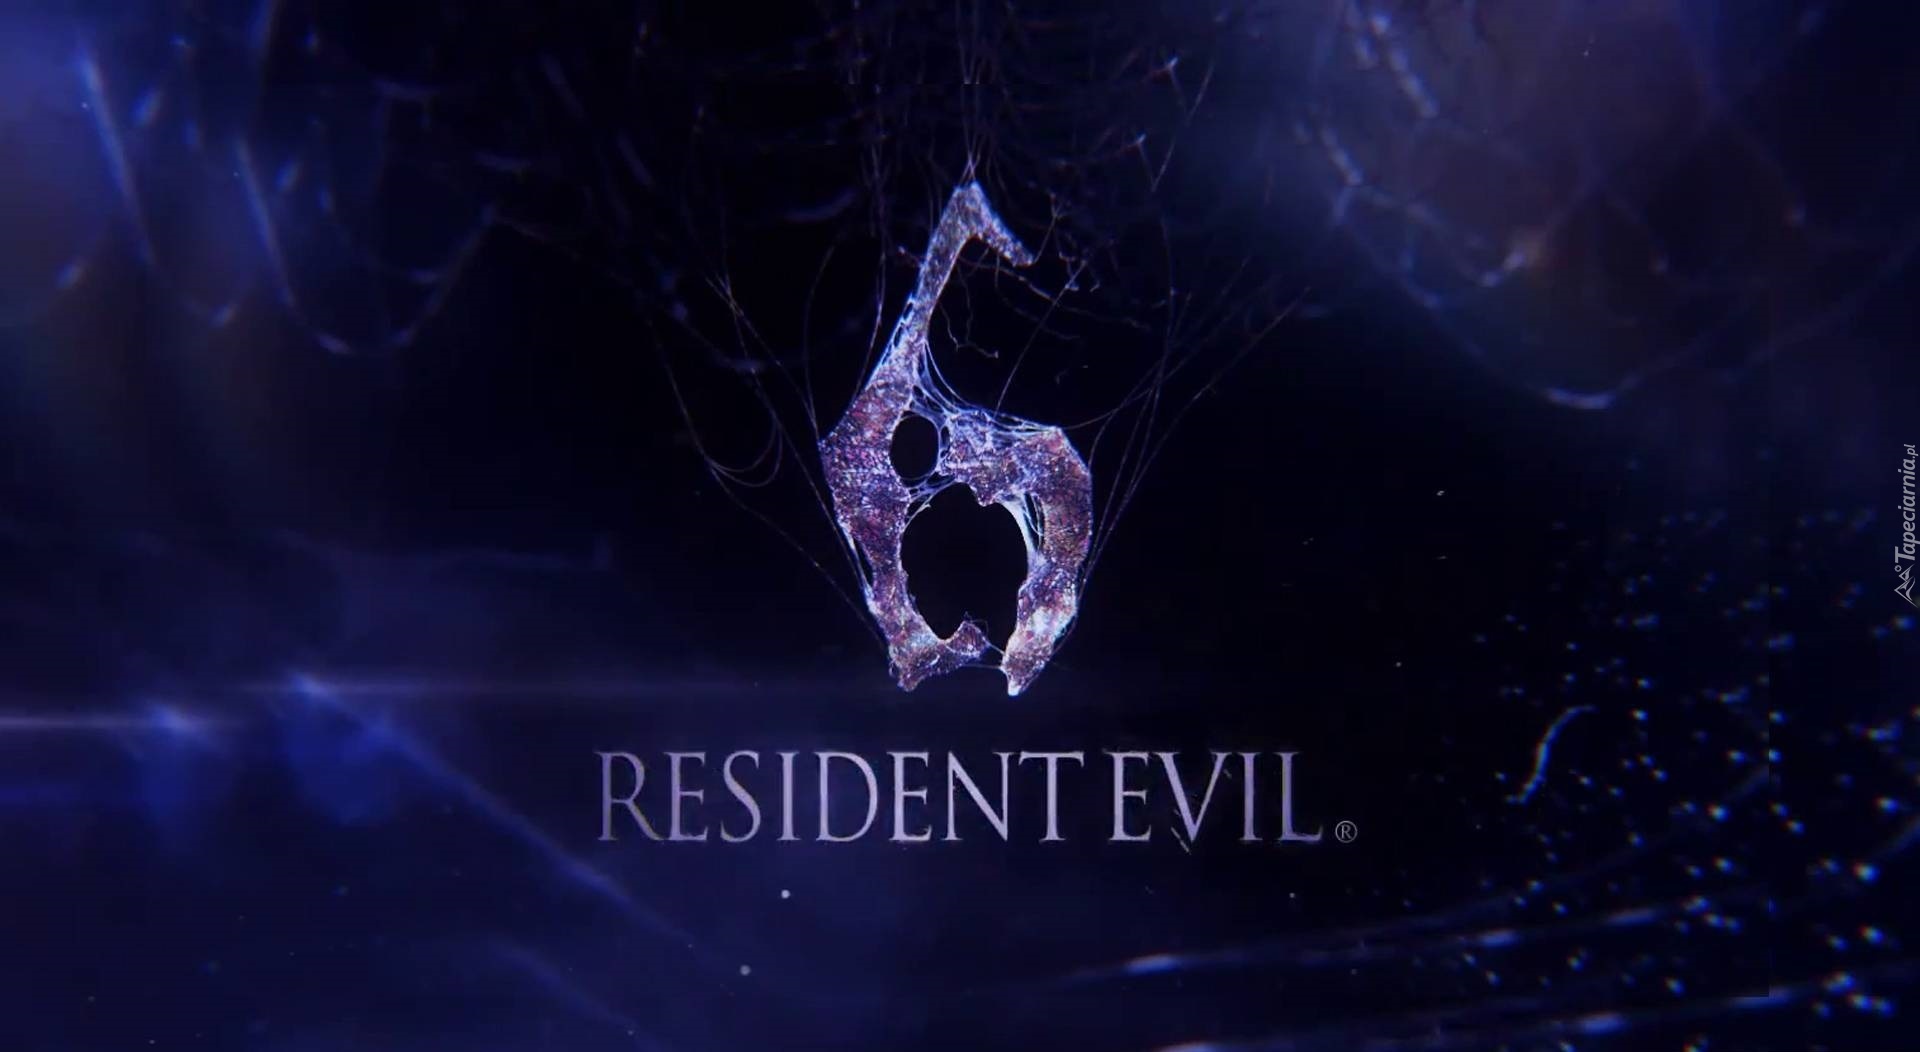 Resident Evil 6, Logo